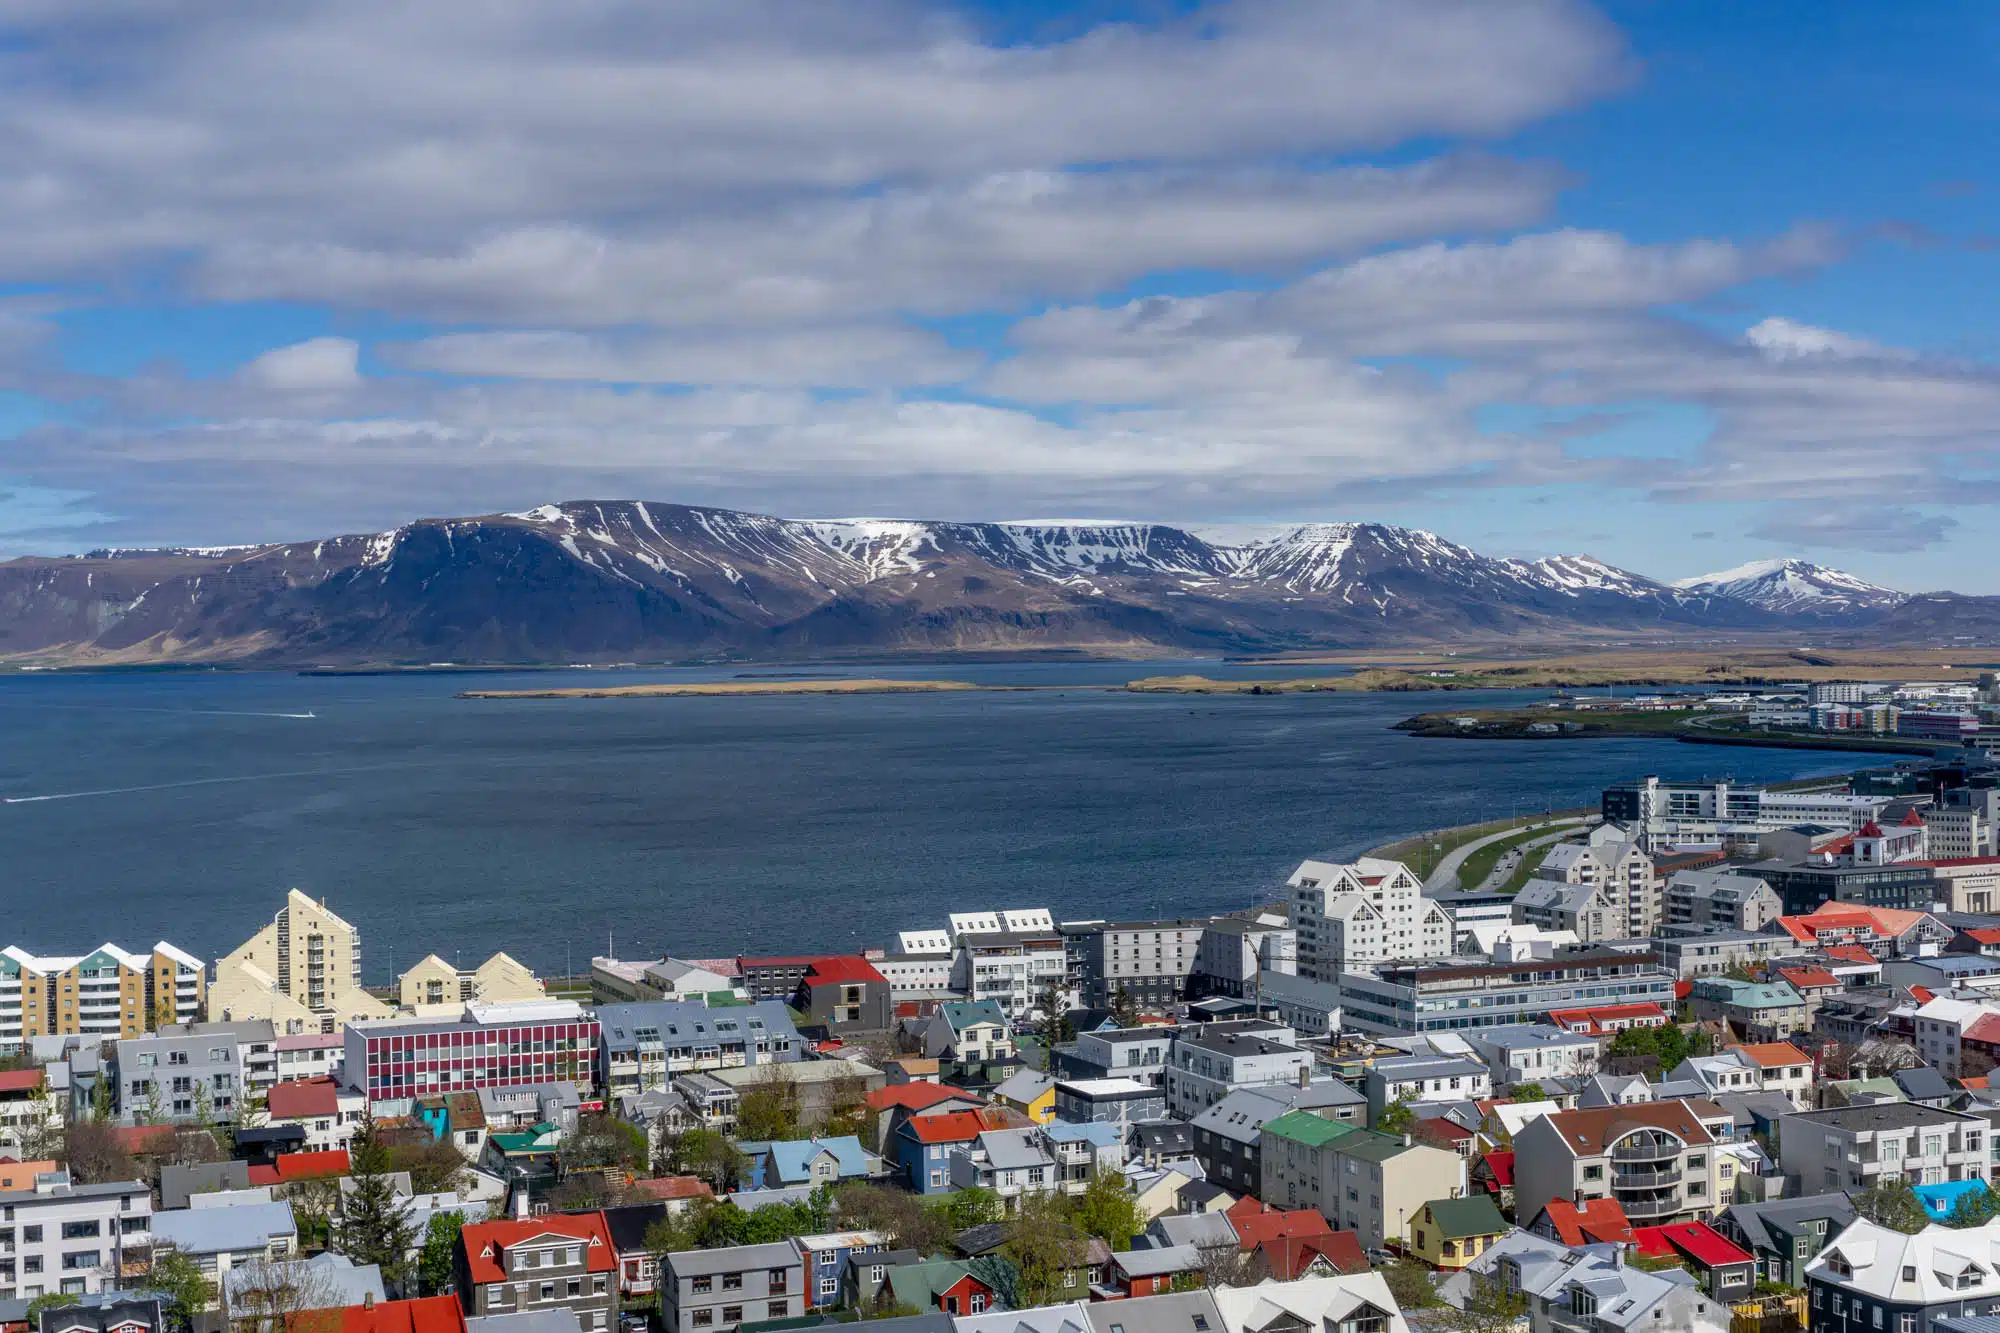 Doen in Reykjavik - Tips en bezienswaardigheden